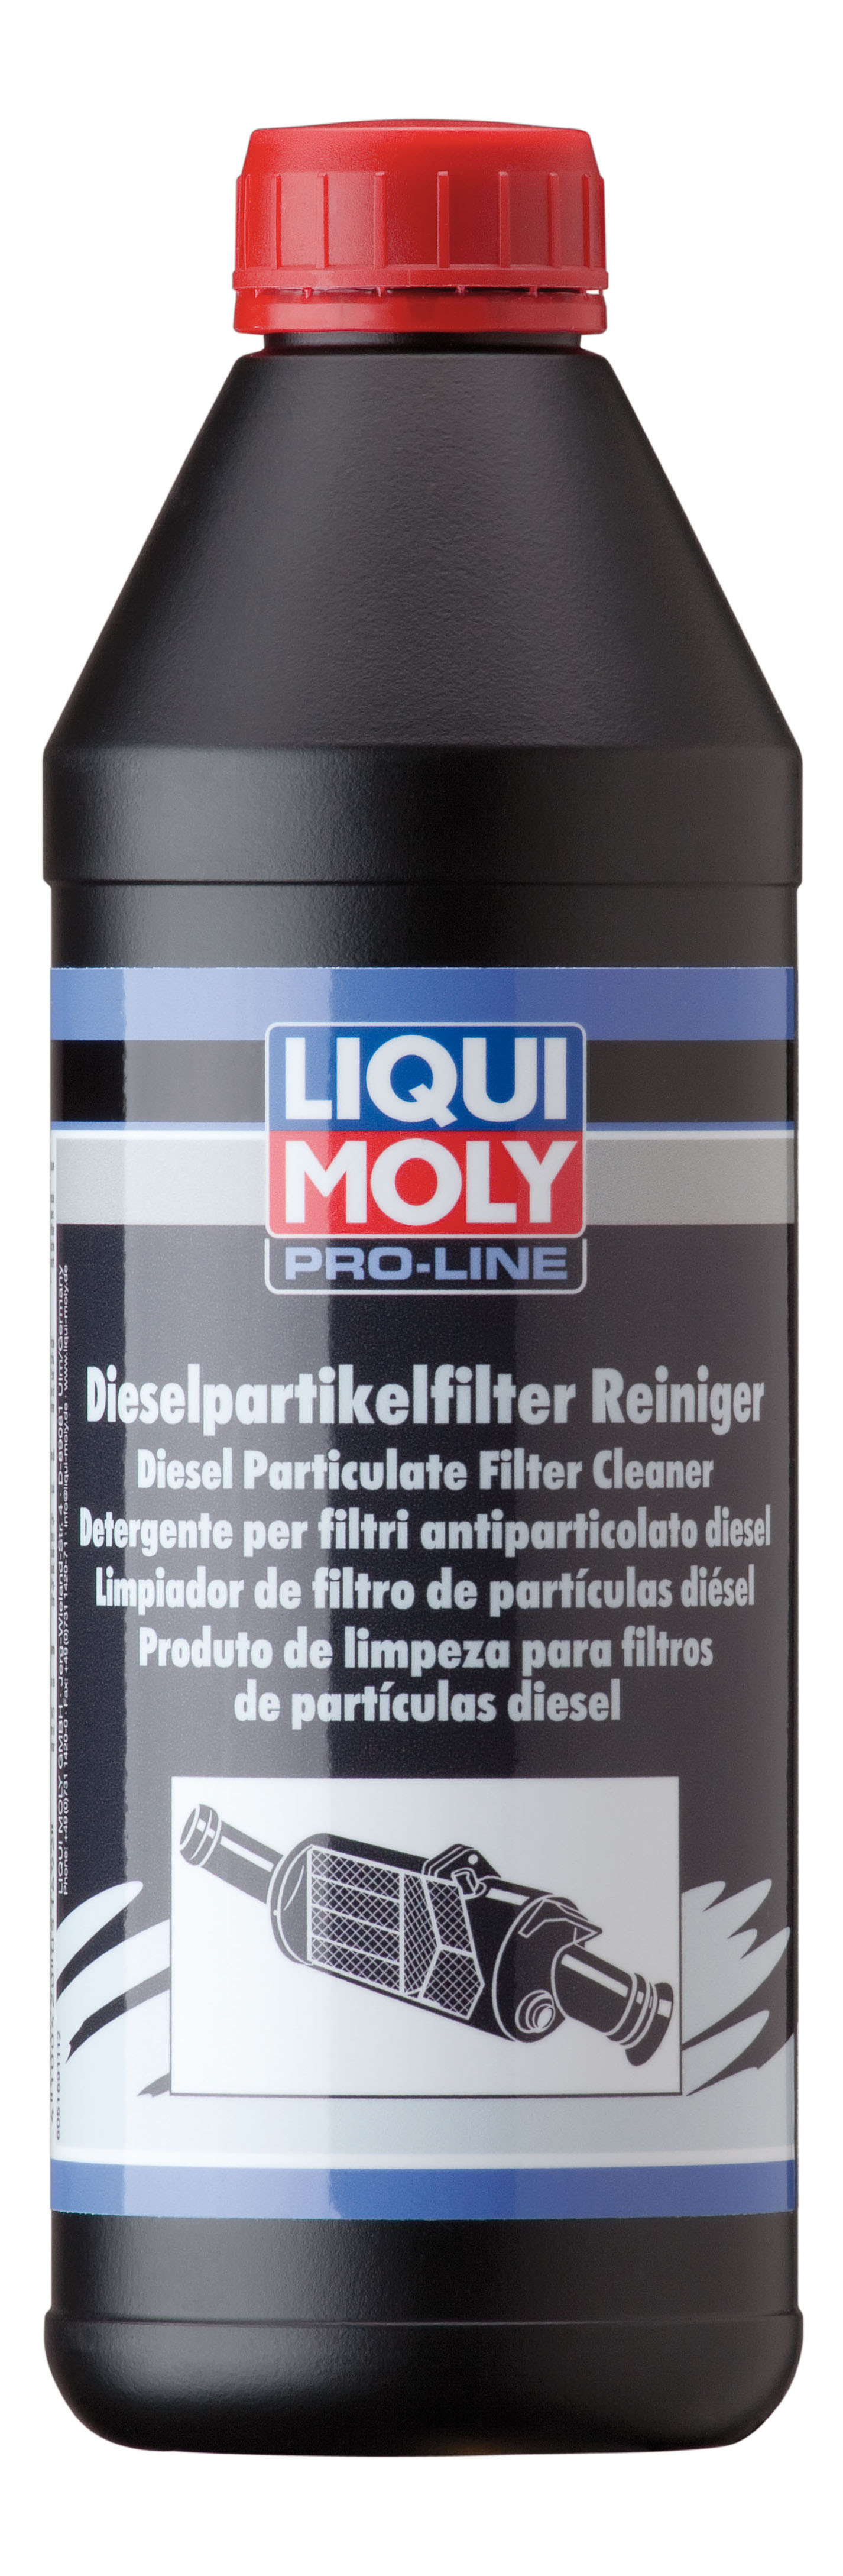 Очиститель сажевого фильтра LIQUI MOLY 5169 Pro-Line Diesel Partikelfilter Reiniger